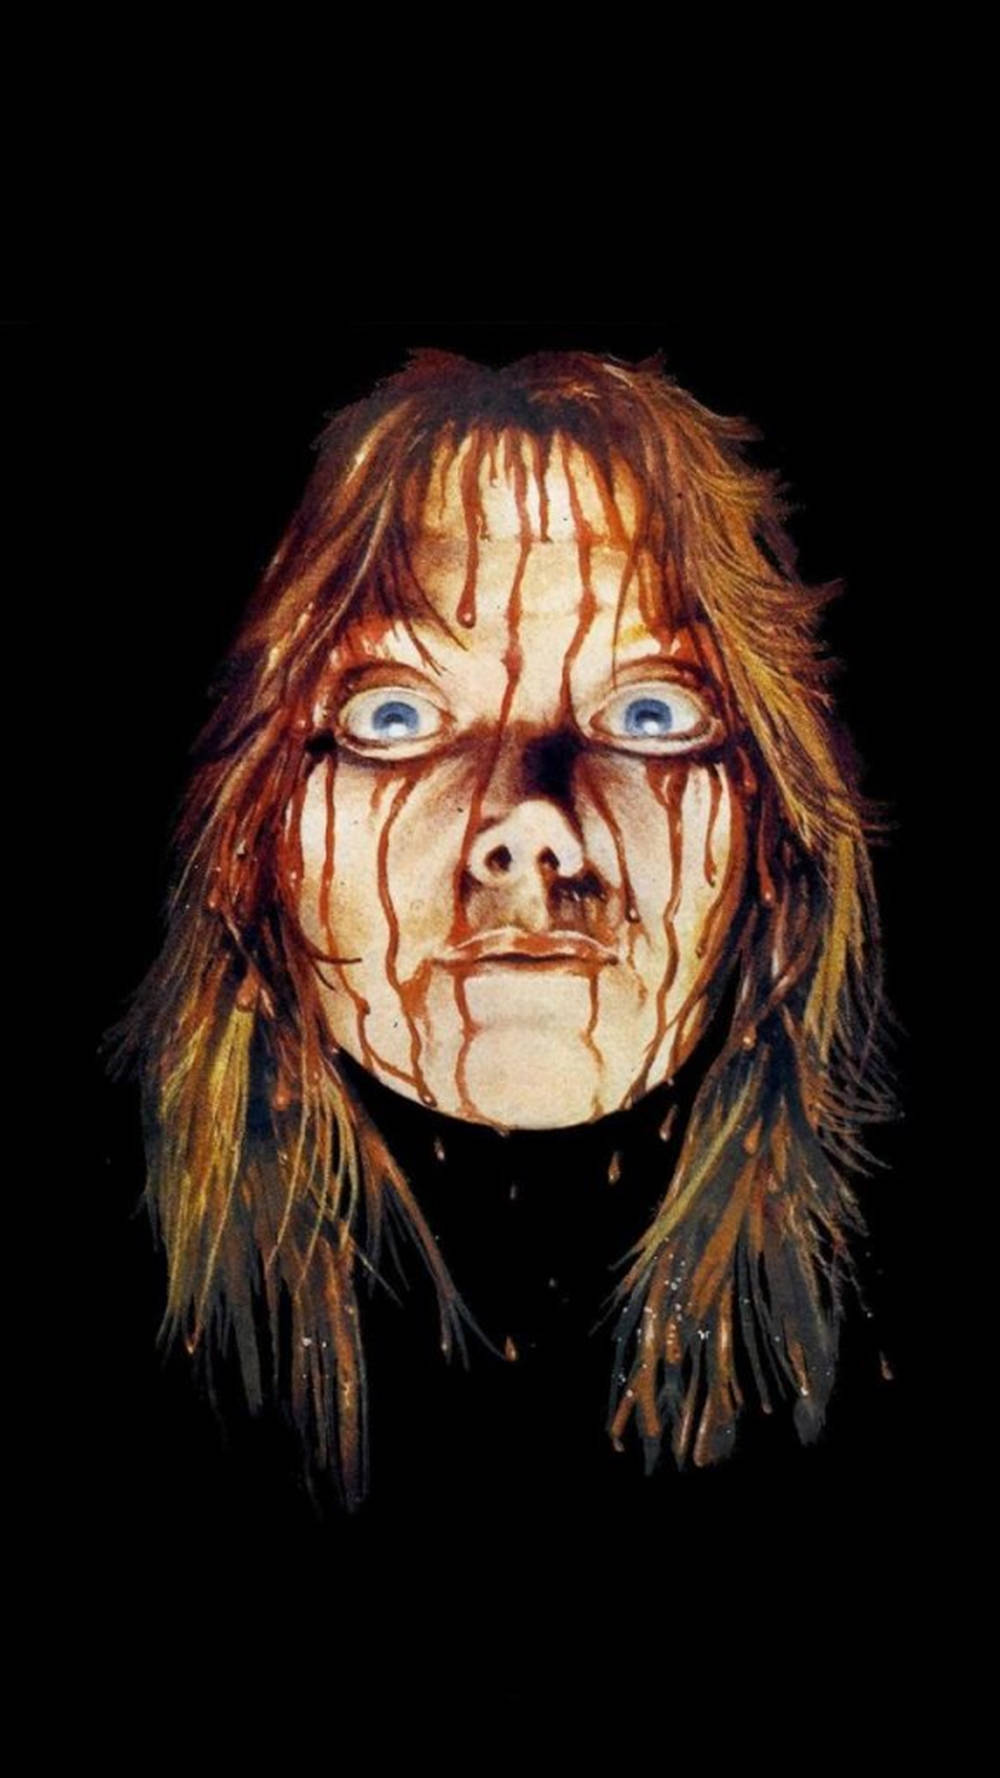 Sissy Spacek Horror Movie Icon Carrie Wallpaper